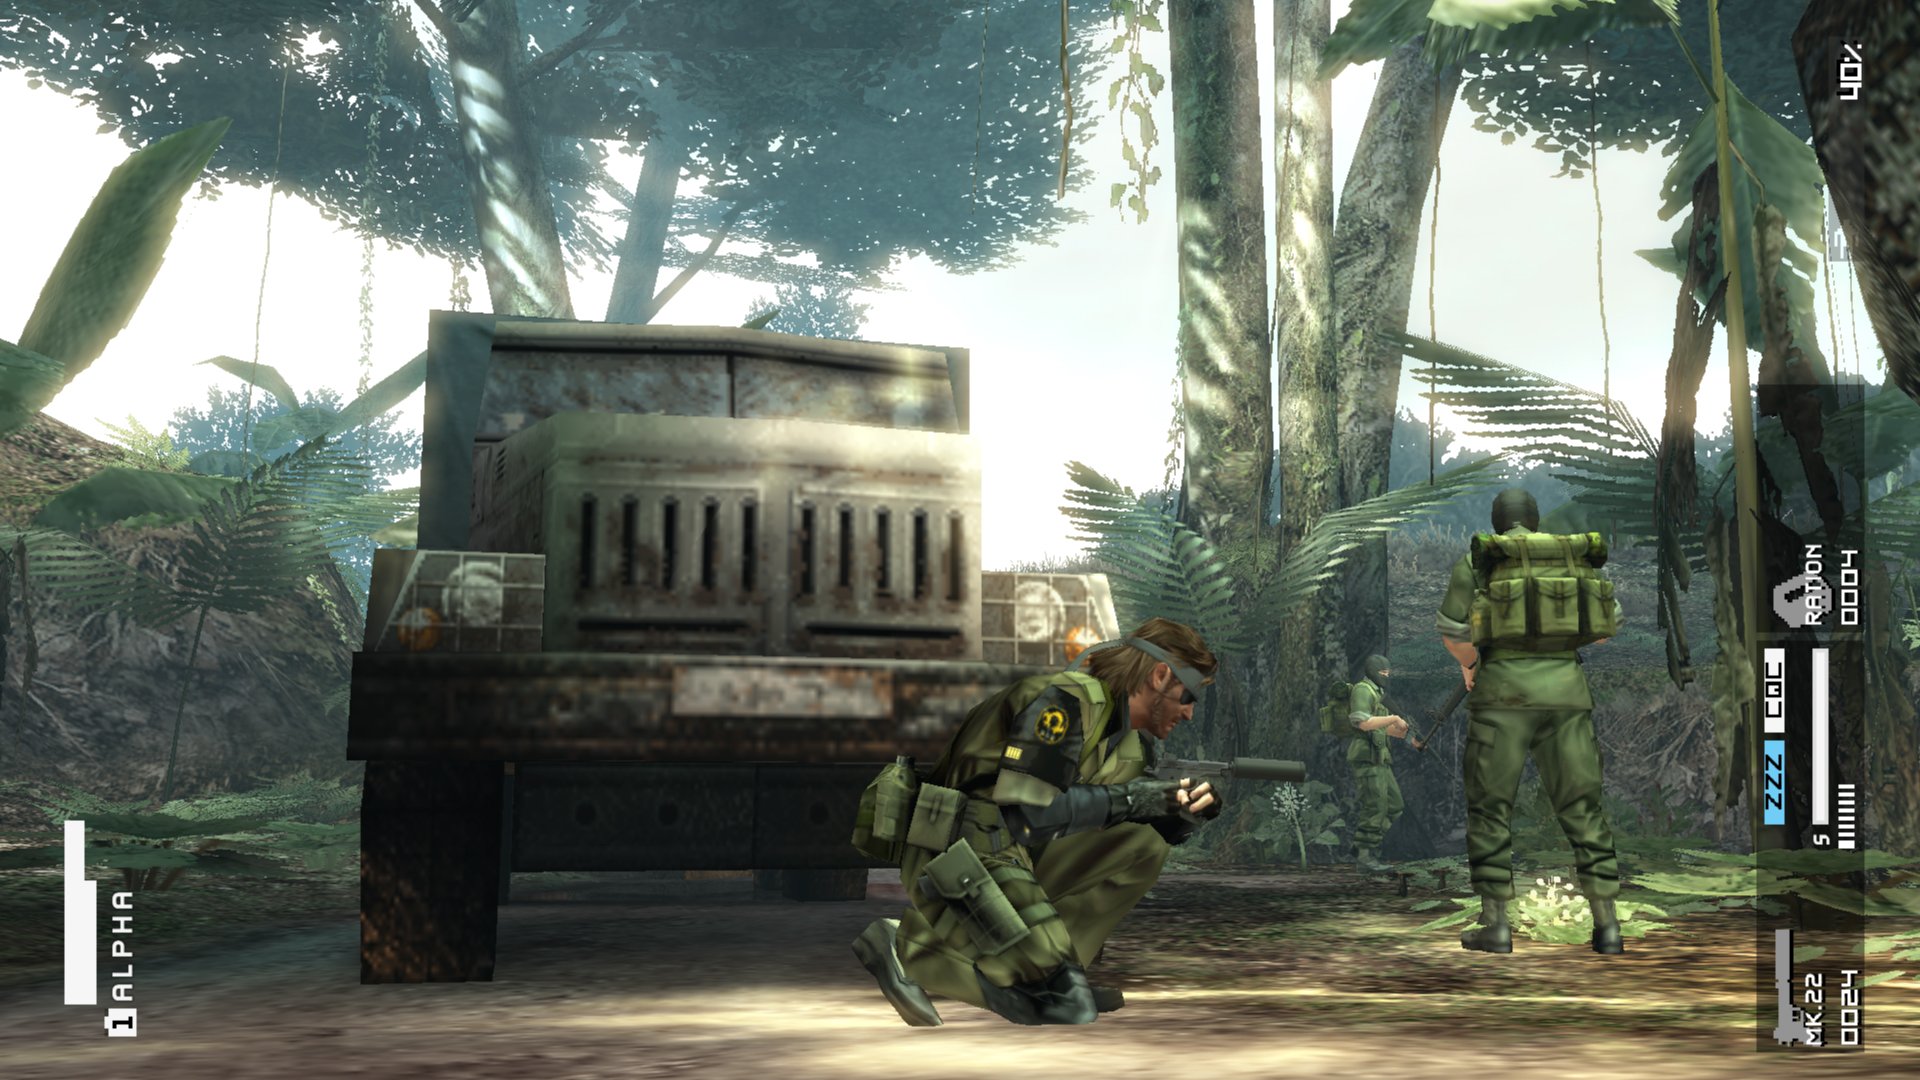 Metal Gear Solid: Peace Walker HD Edition [Japan Import]